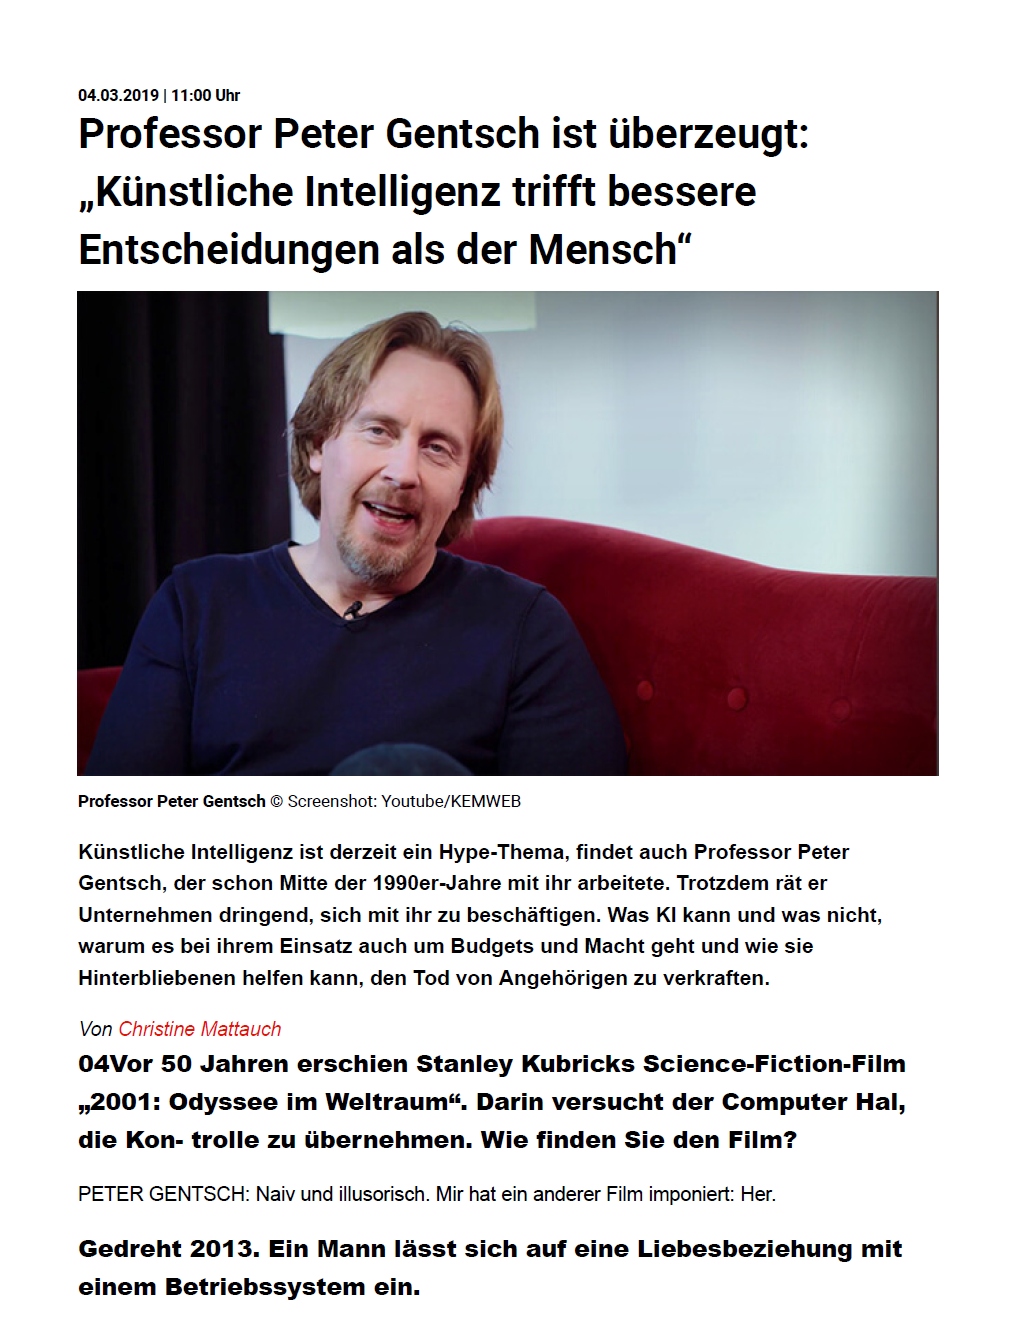 absatzwirtschaft-Interview with Peter Gentsch